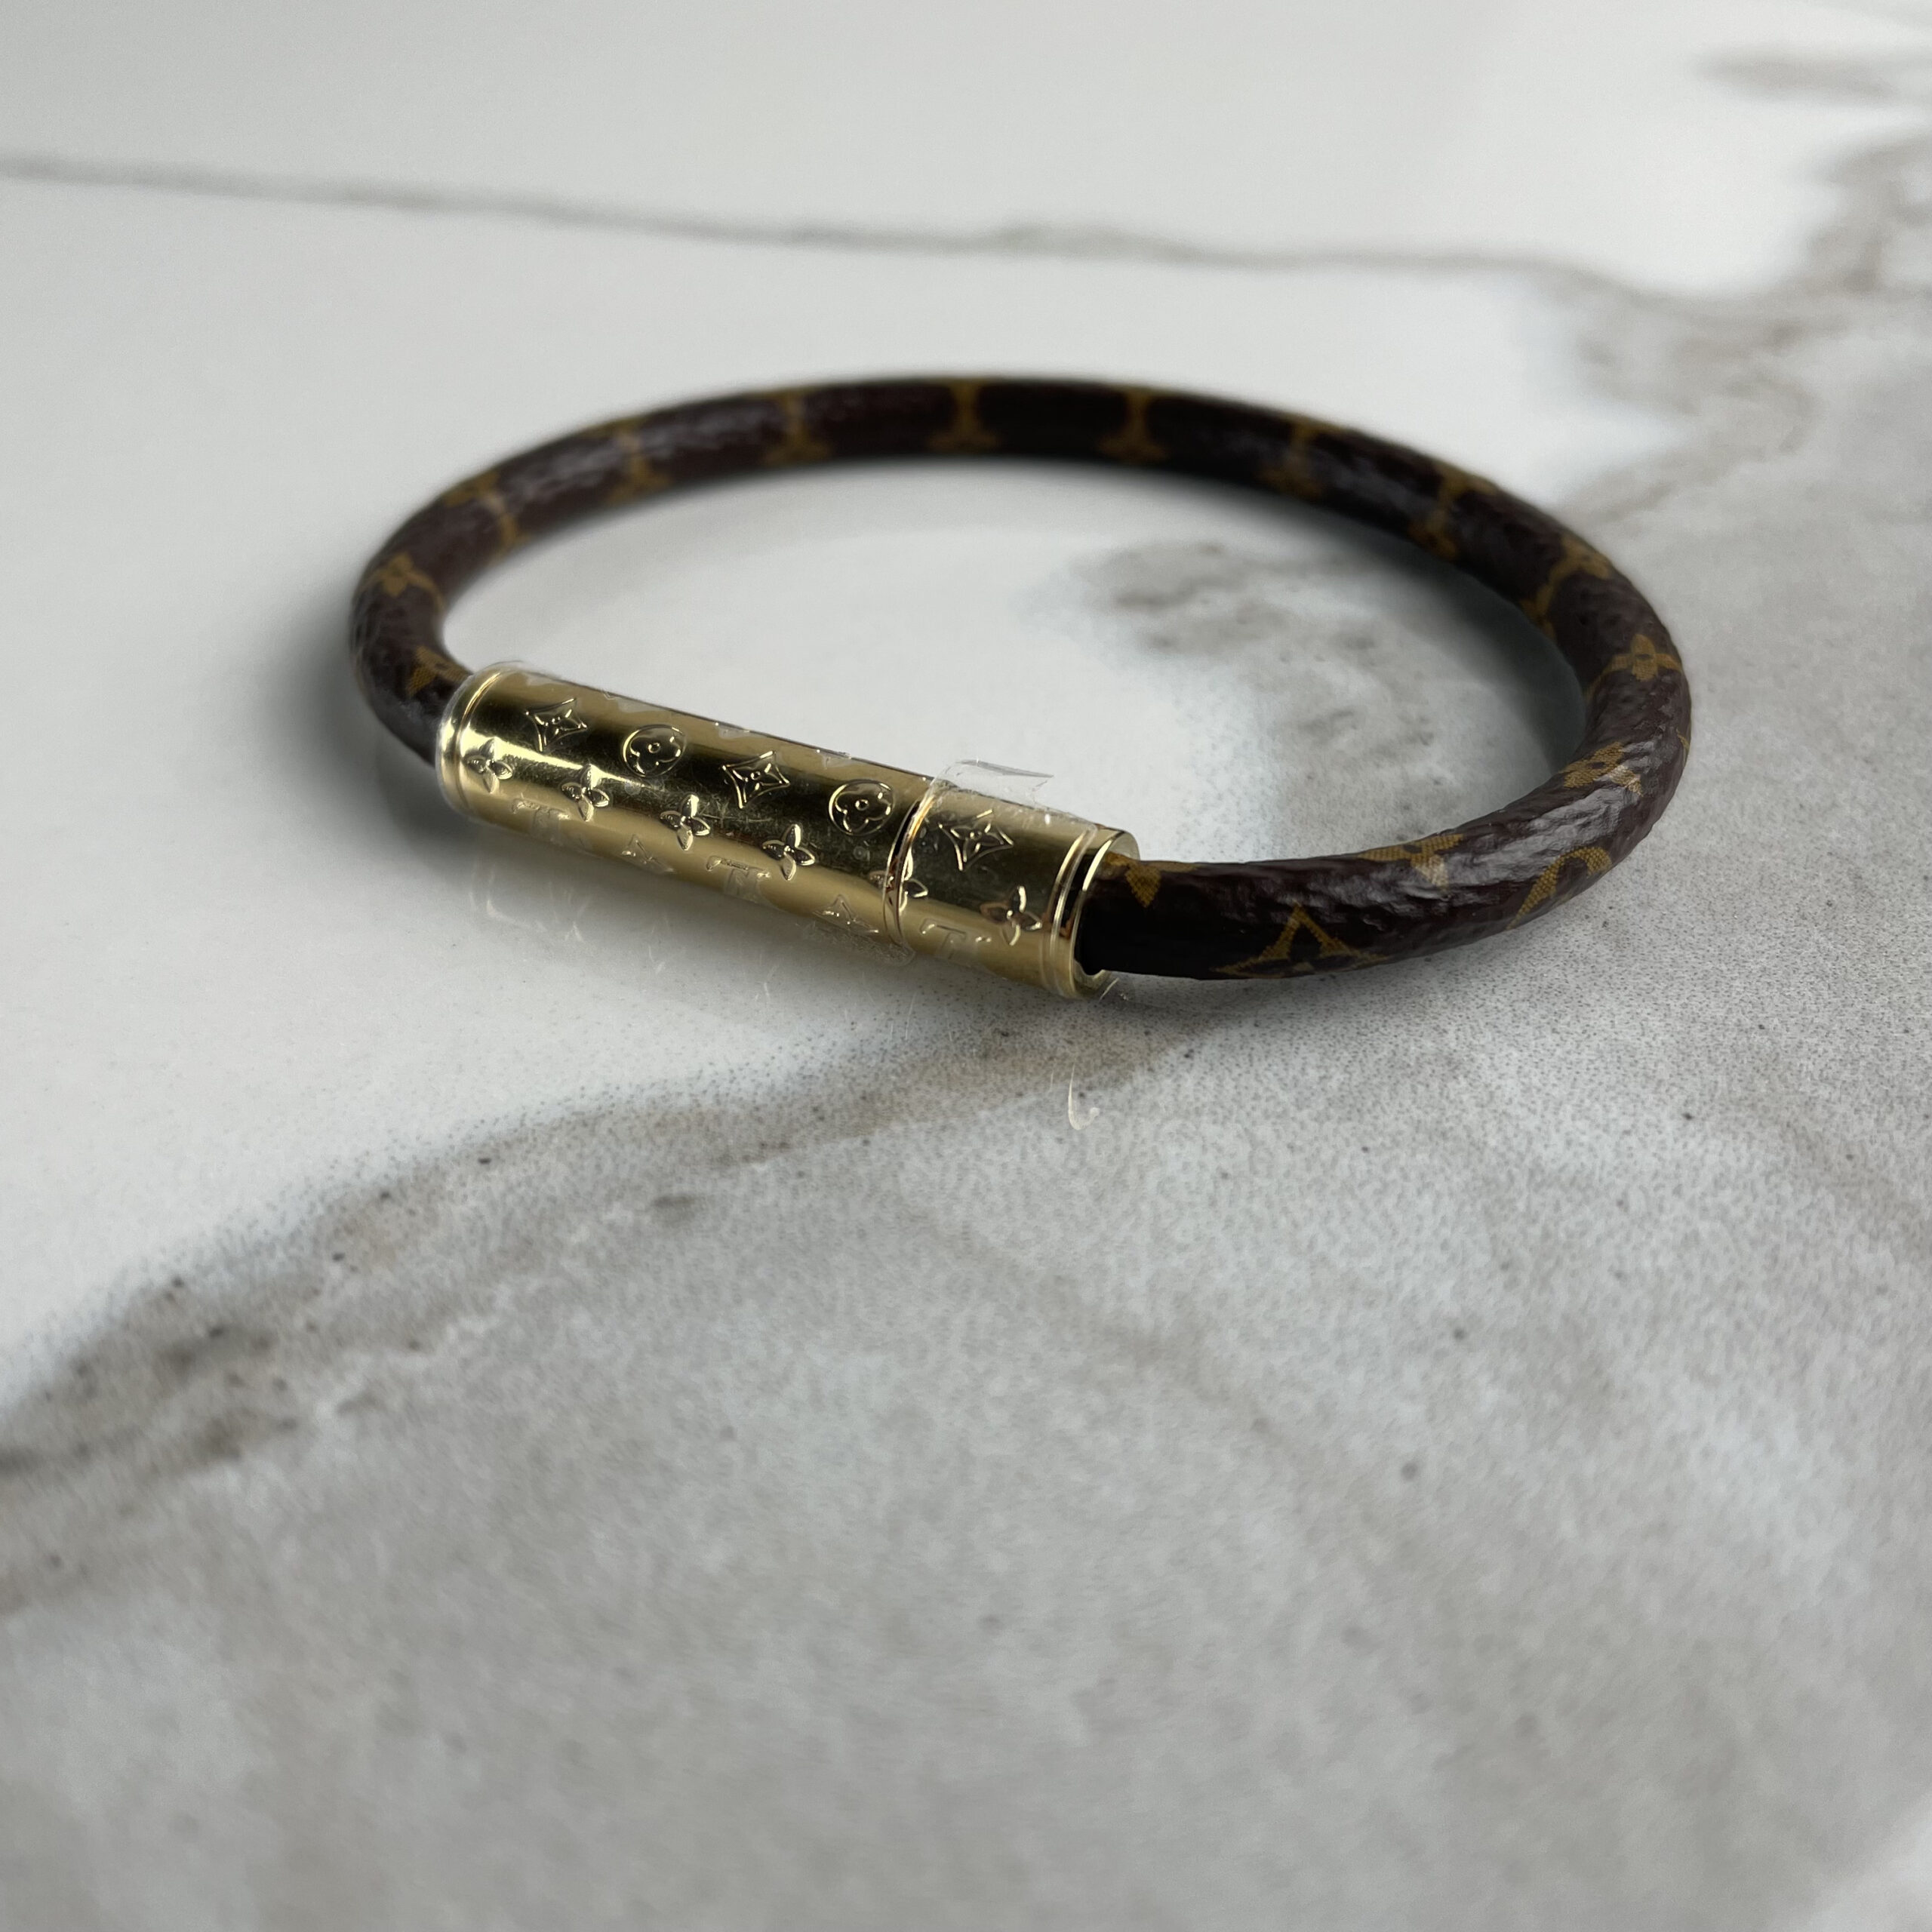 LV Confidential cloth bracelet